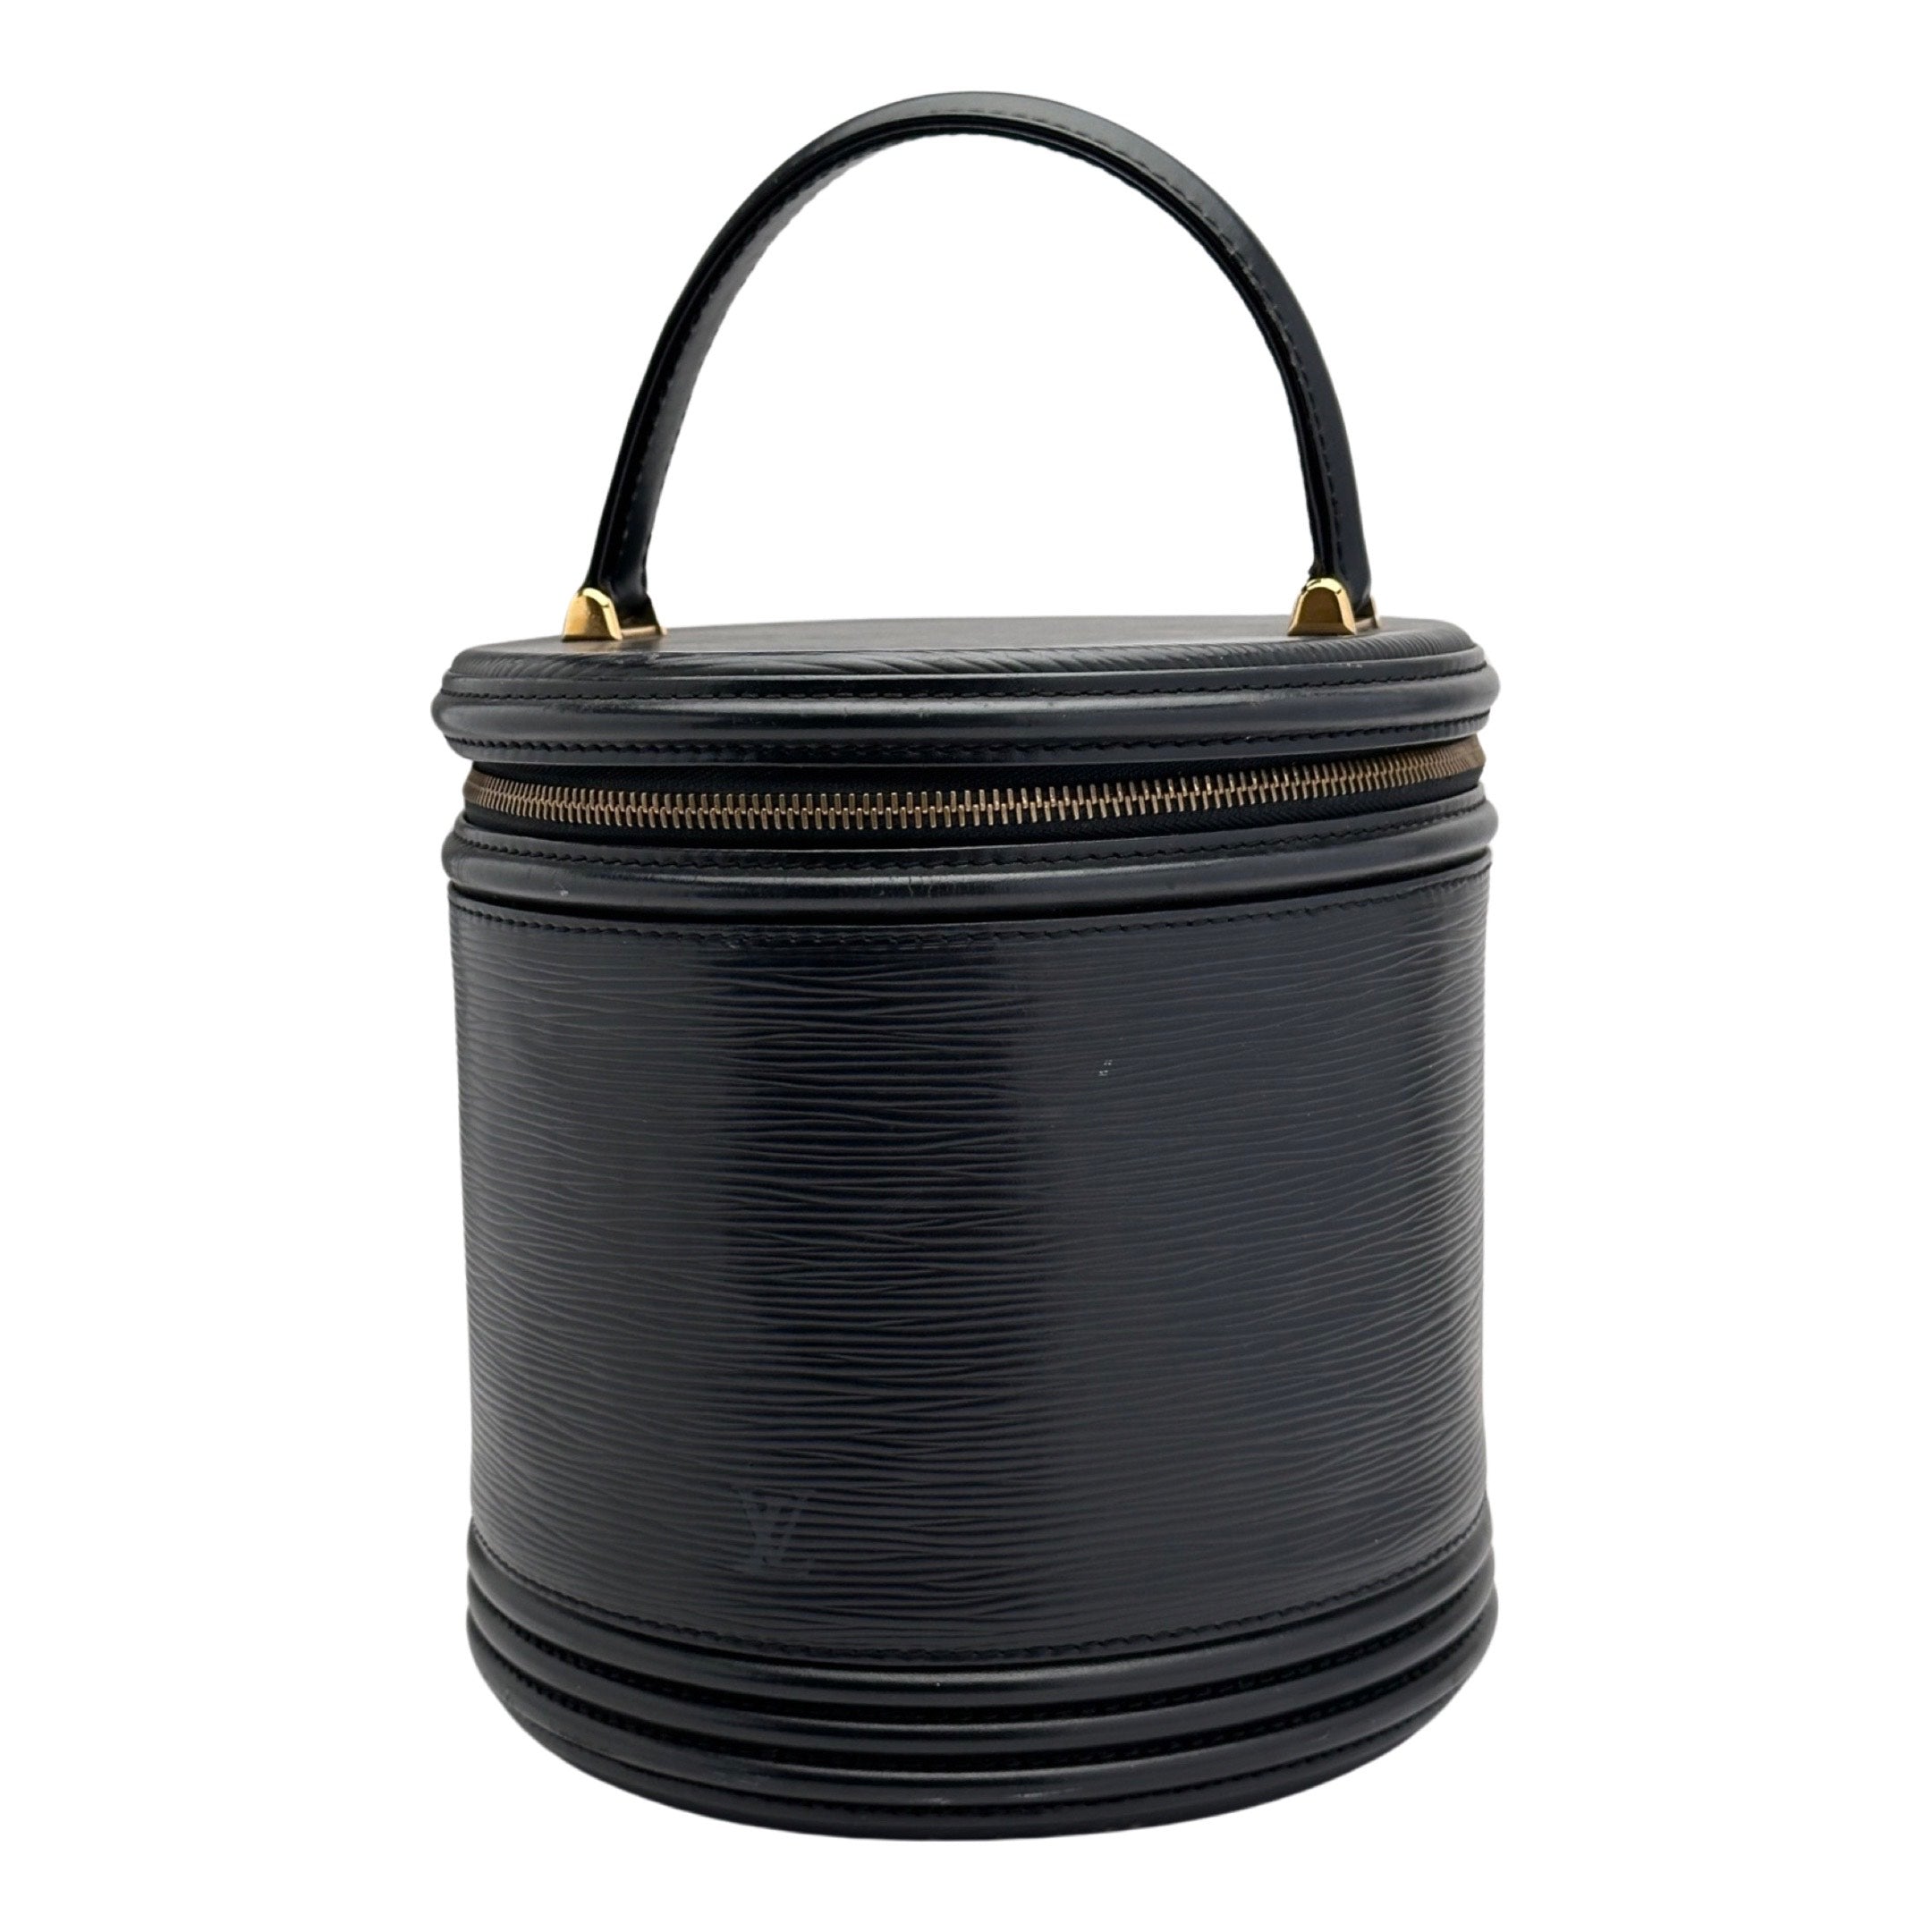 Louis Vuitton Vanity Case Riviera 871998 Noir Black Epi Leather  Weekend/Travel Bag, Louis Vuitton